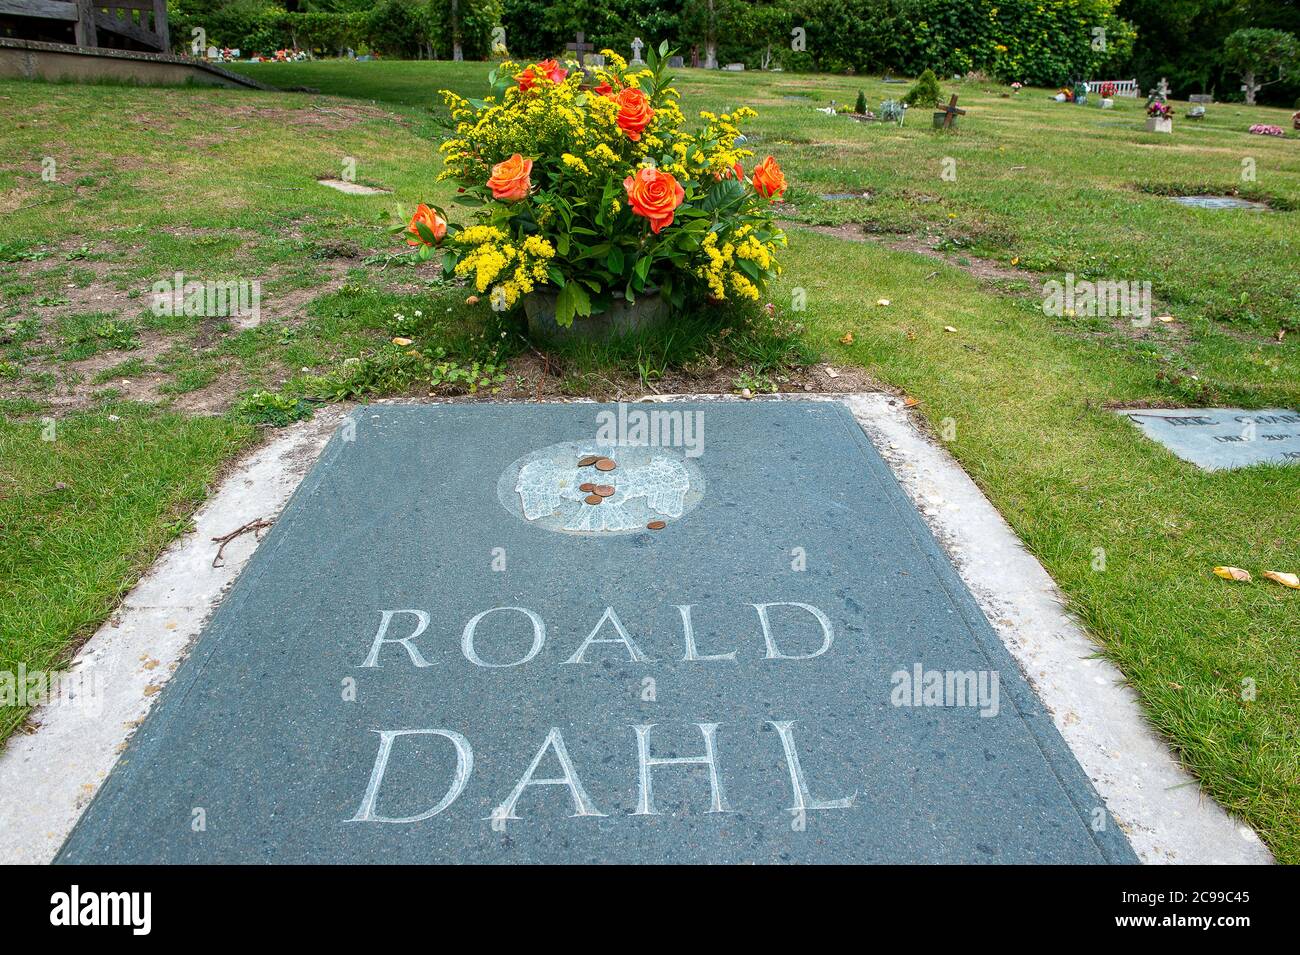 Great Missenden, Buckinghamshire, Royaume-Uni. 28 juillet 2020. Bien que le musée Roald Dahl de Great Missenden soit actuellement fermé, les visiteurs peuvent encore voir la tombe de l'auteur Roald Dahl dans le chantier naval du village. Crédit : Maureen McLean/Alay Banque D'Images